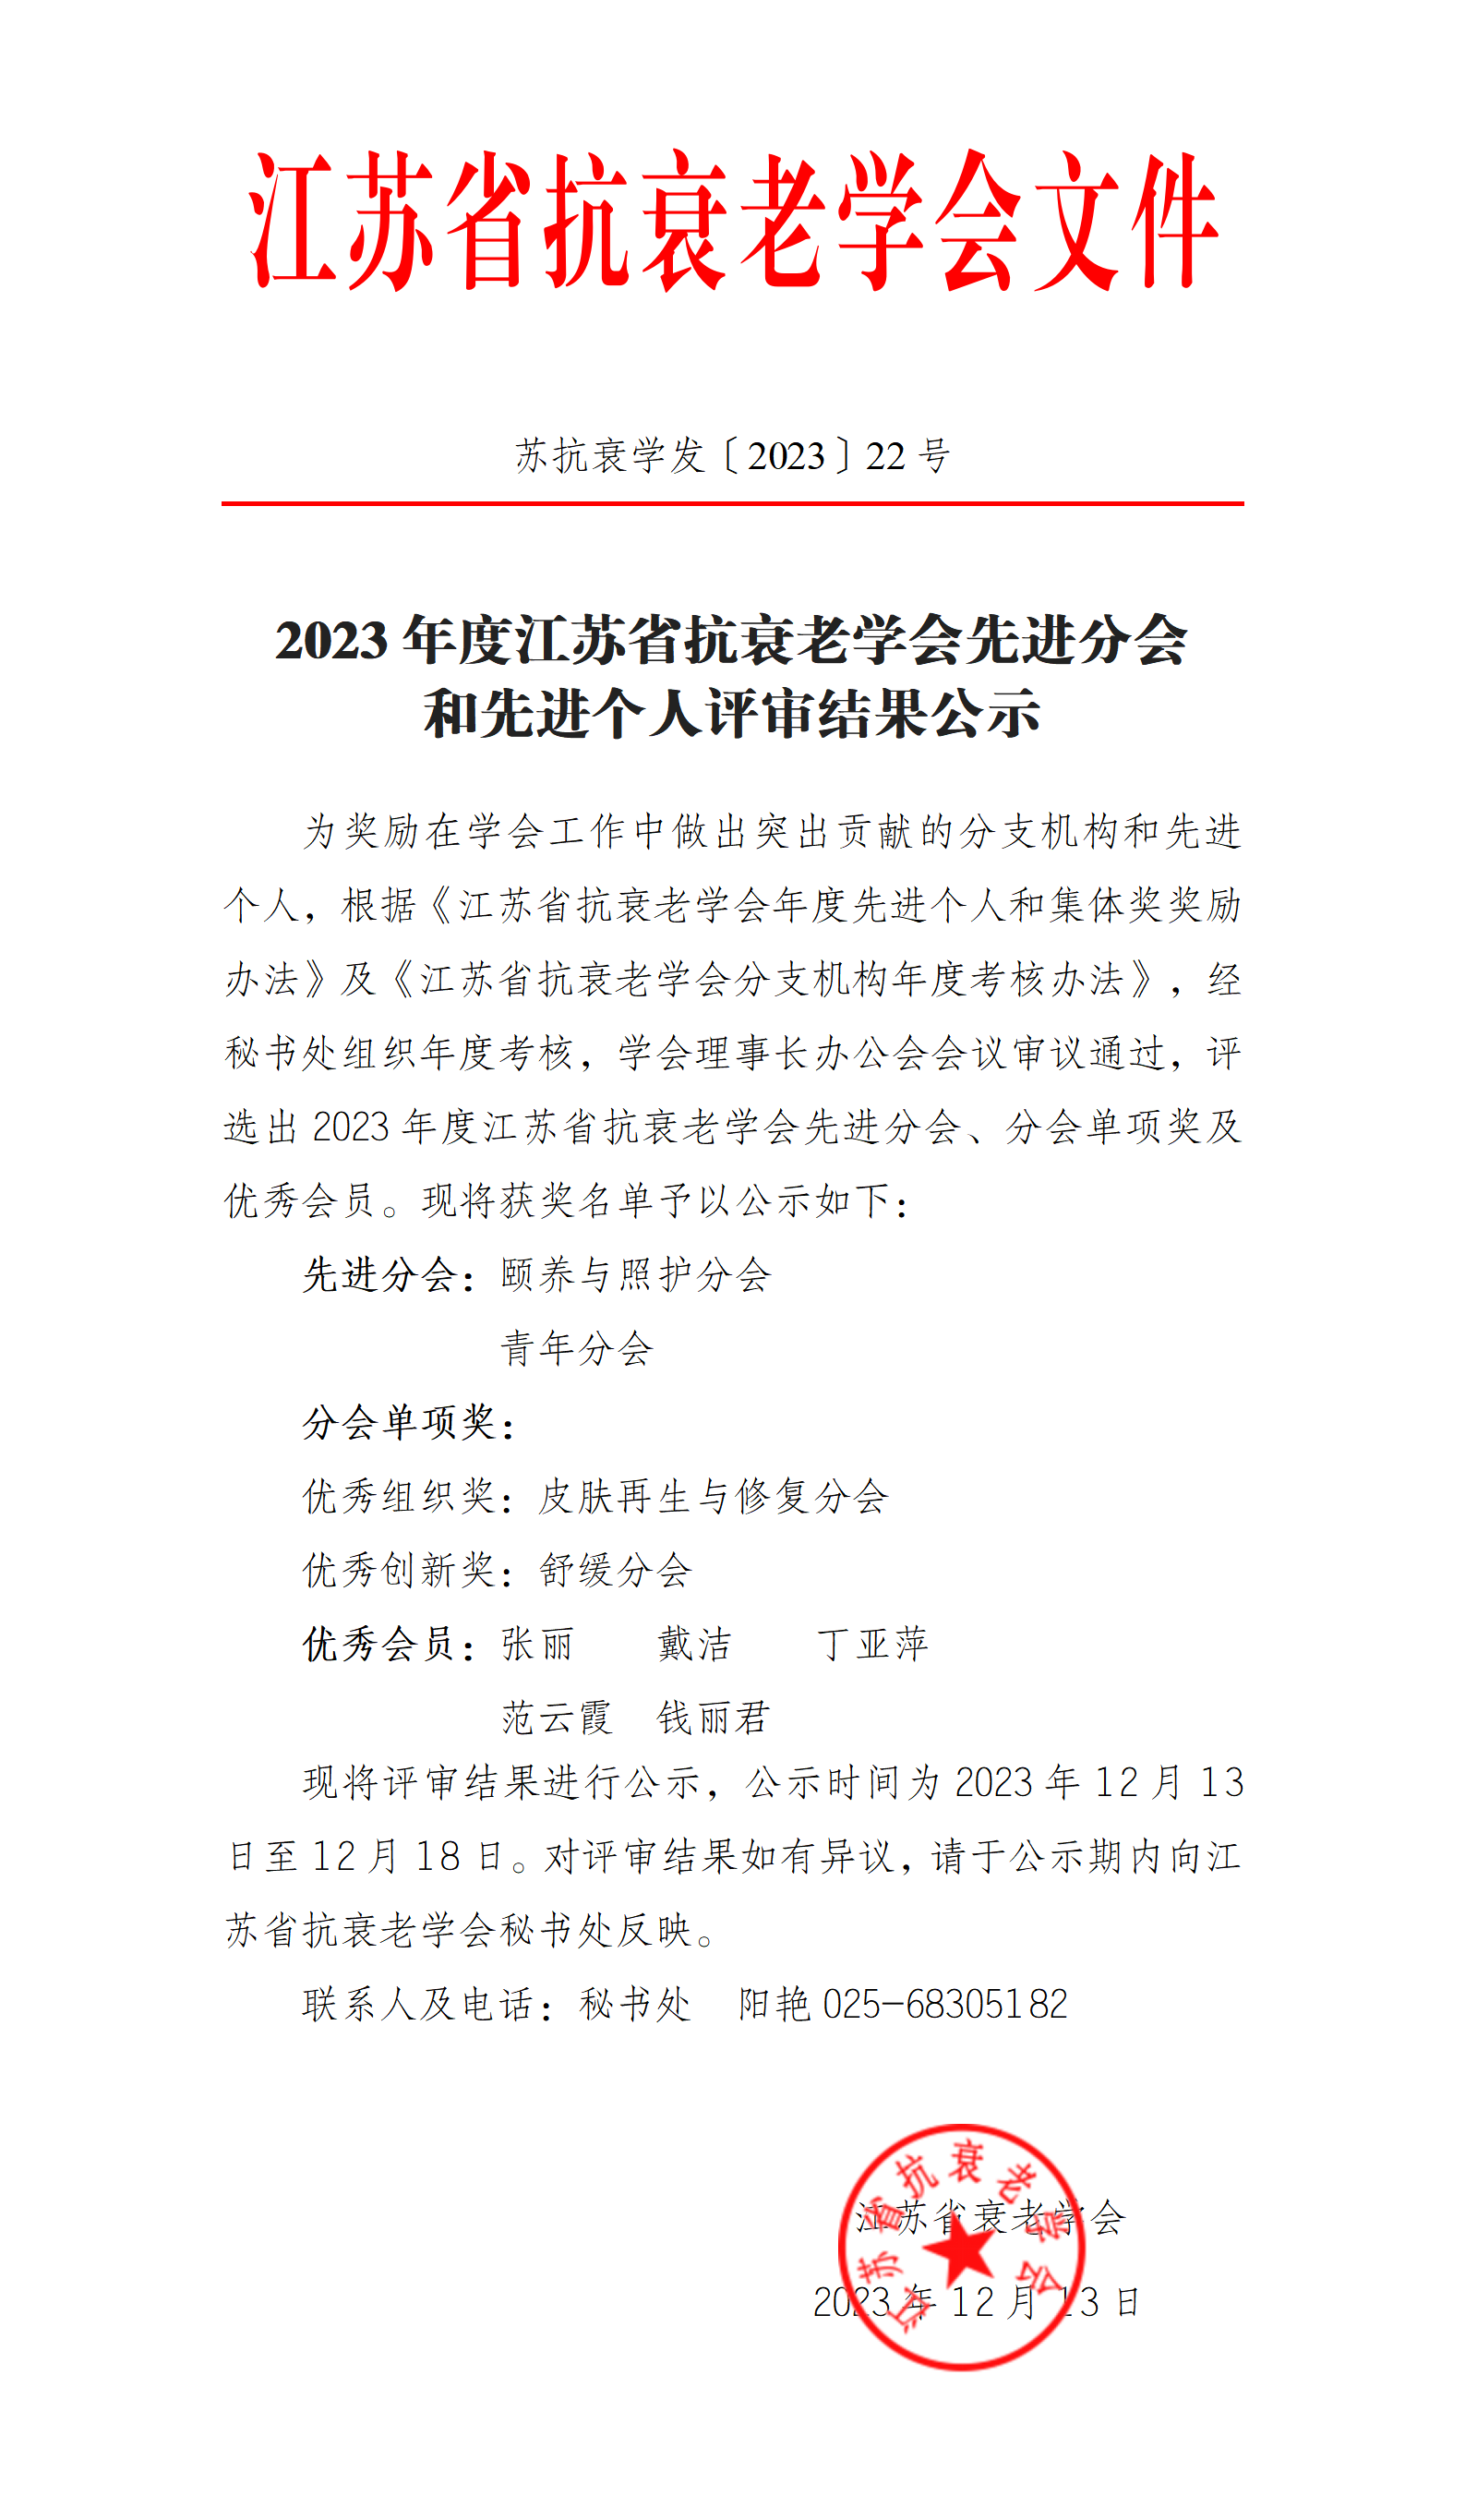 〔2023〕22号- 2023年度江苏省抗衰老学会先进分会和先进个人评审结果公示_01.png